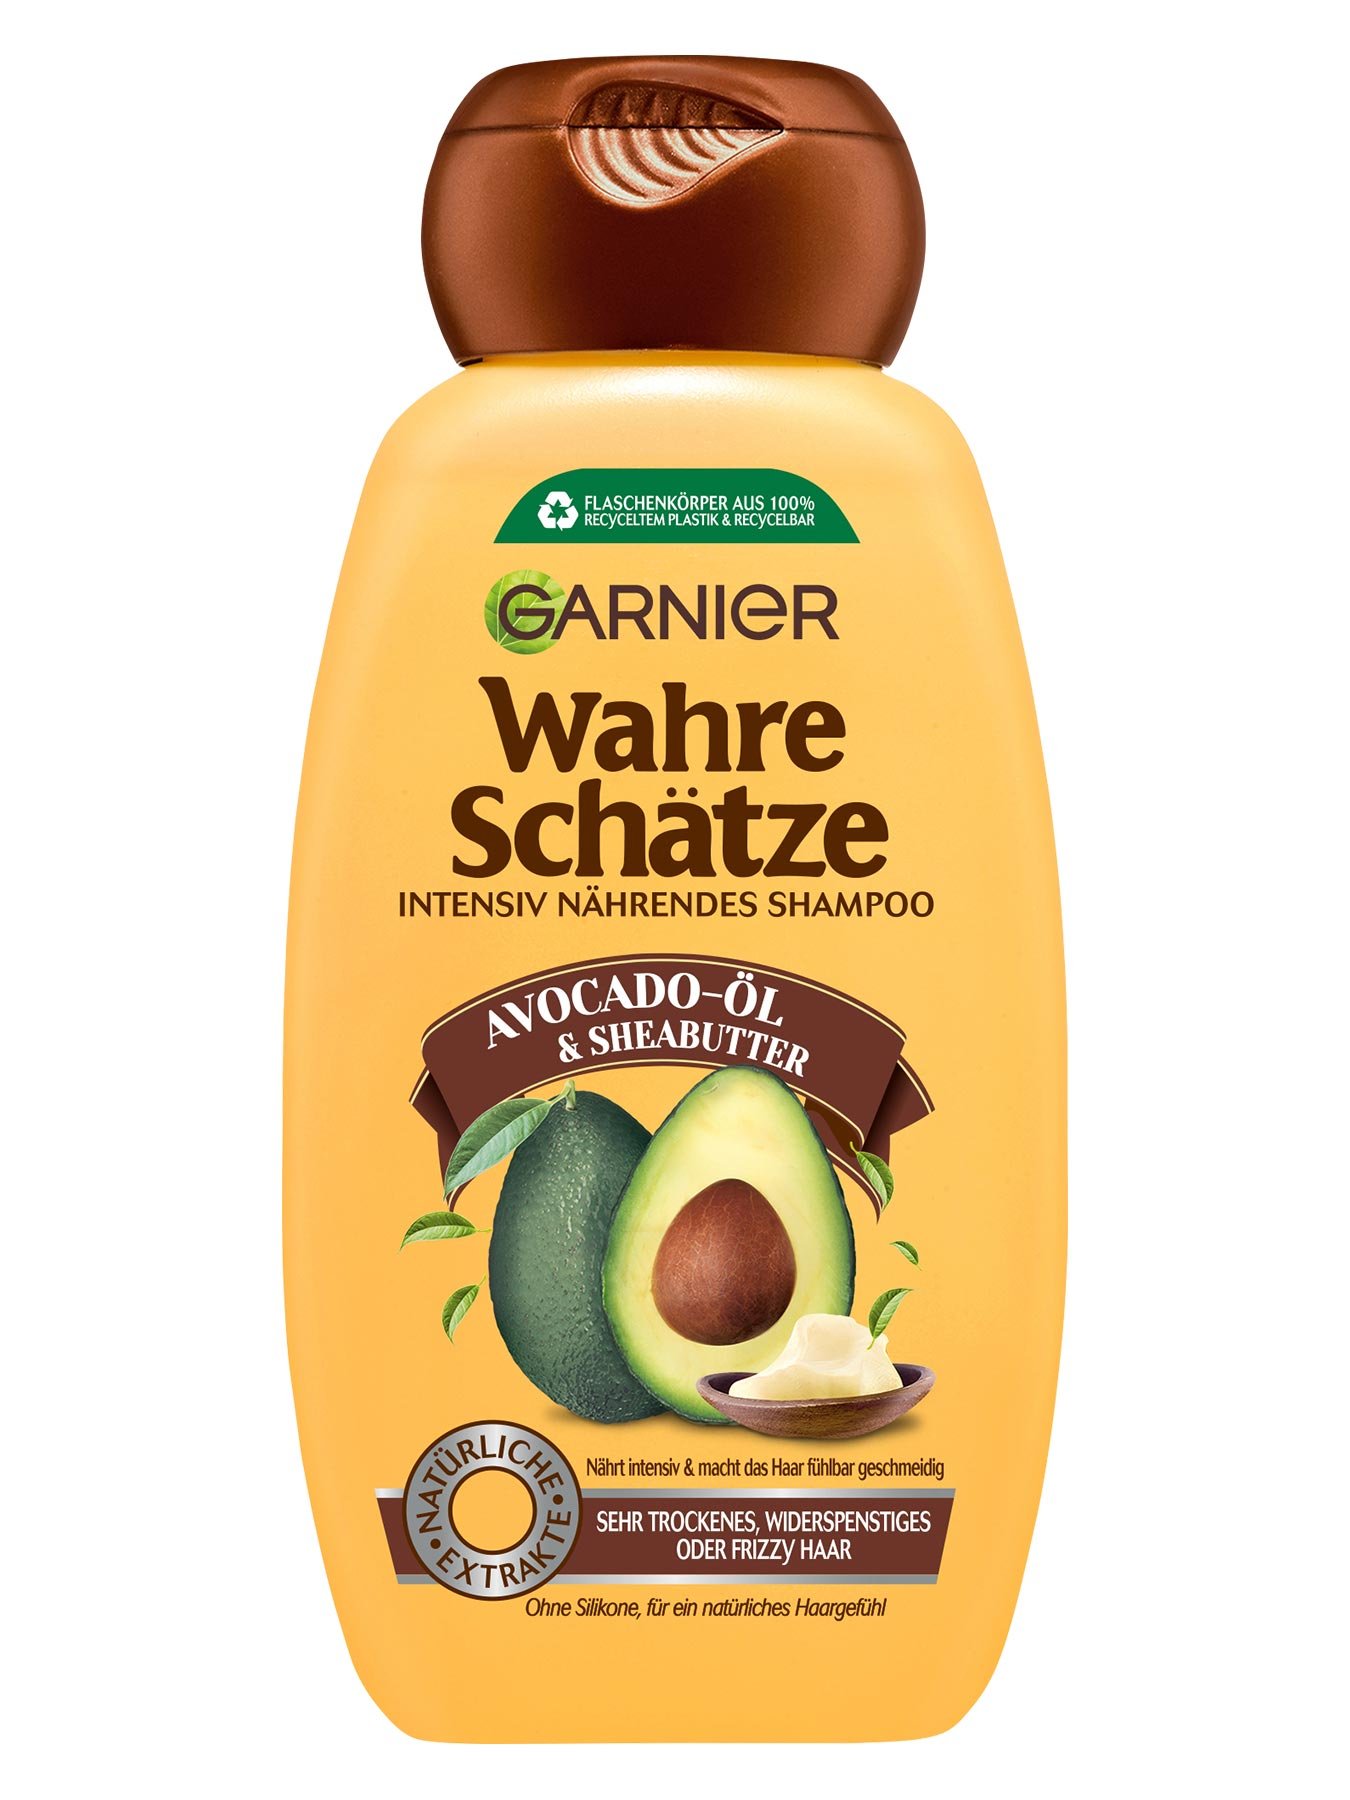 Garnier Wahre Schätze Avocado Shampoo